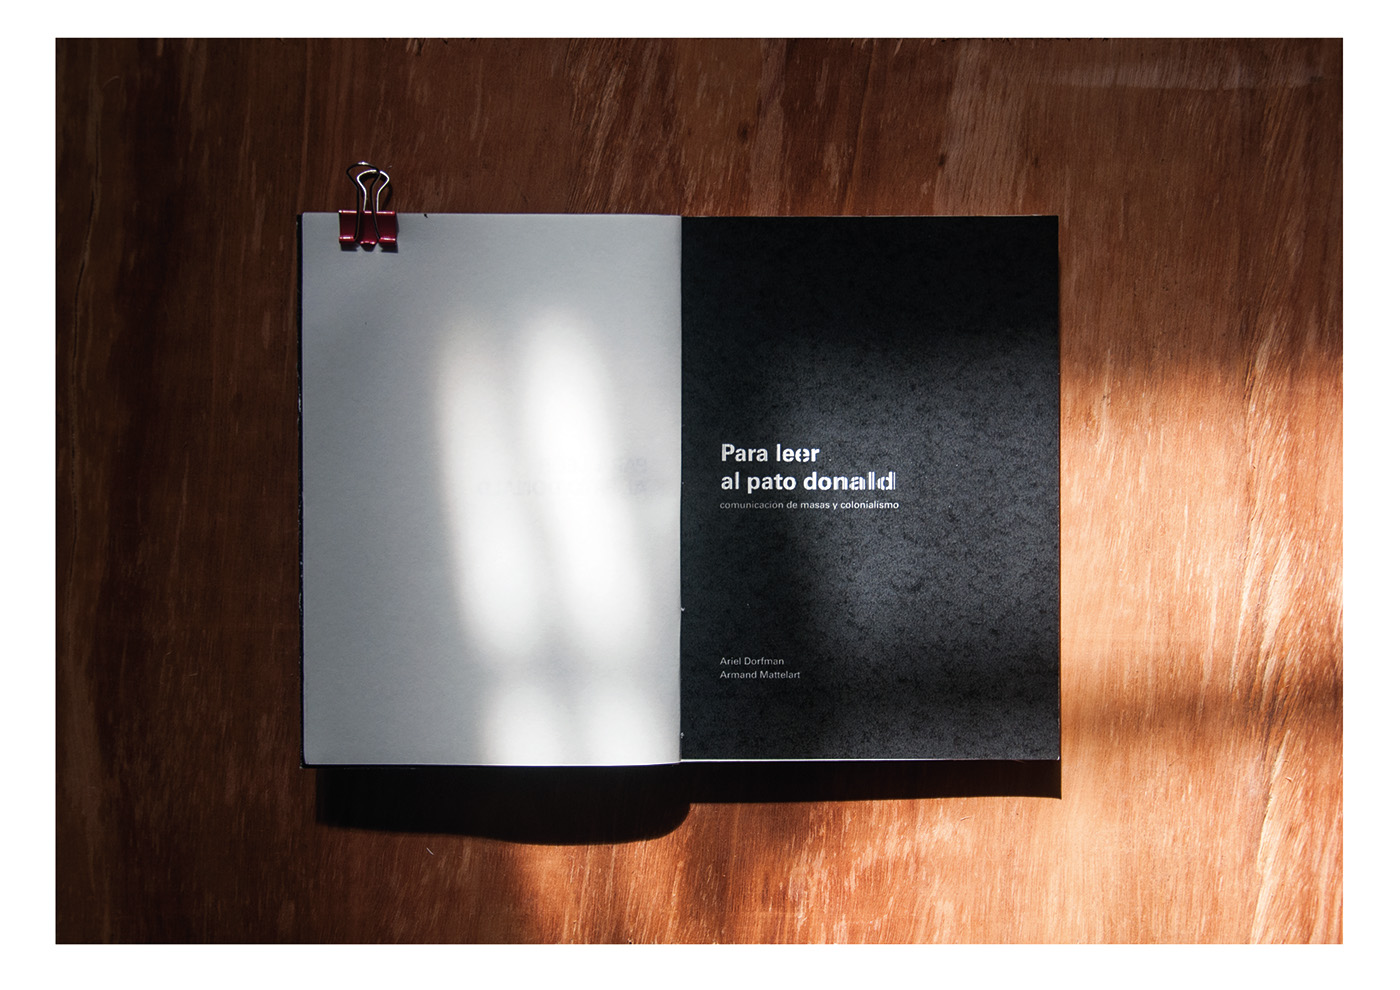 manela editorial fadu design colección Book collection Ensayo politico political essay